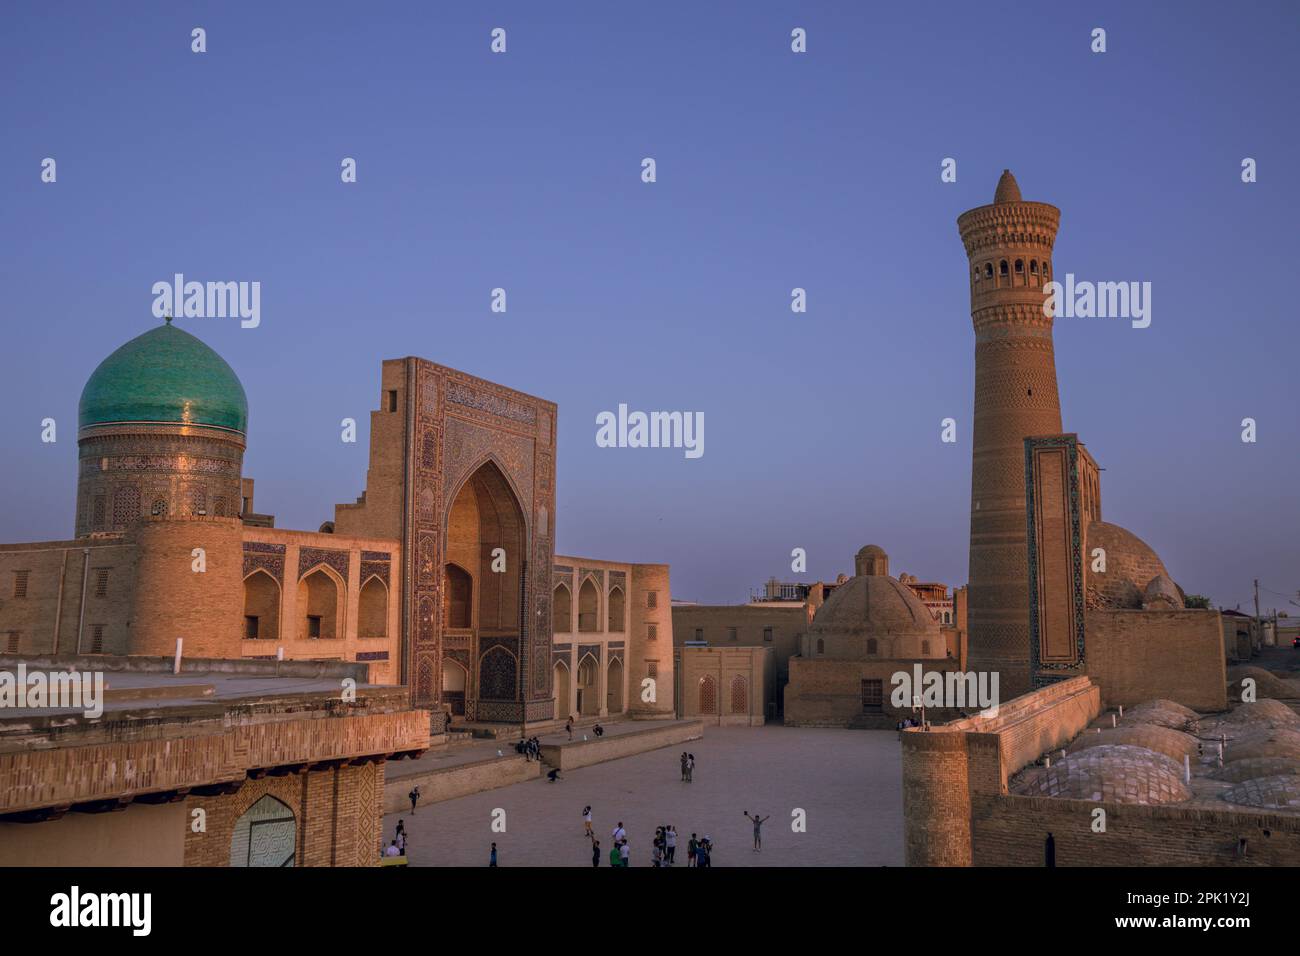 Sonnenuntergang und persische Architektur in der alten Seidenstraße Bukhara, Usbekistan, Po-i-Kalan islamischer religiöser Komplex, Kalyan Moschee Stockfoto